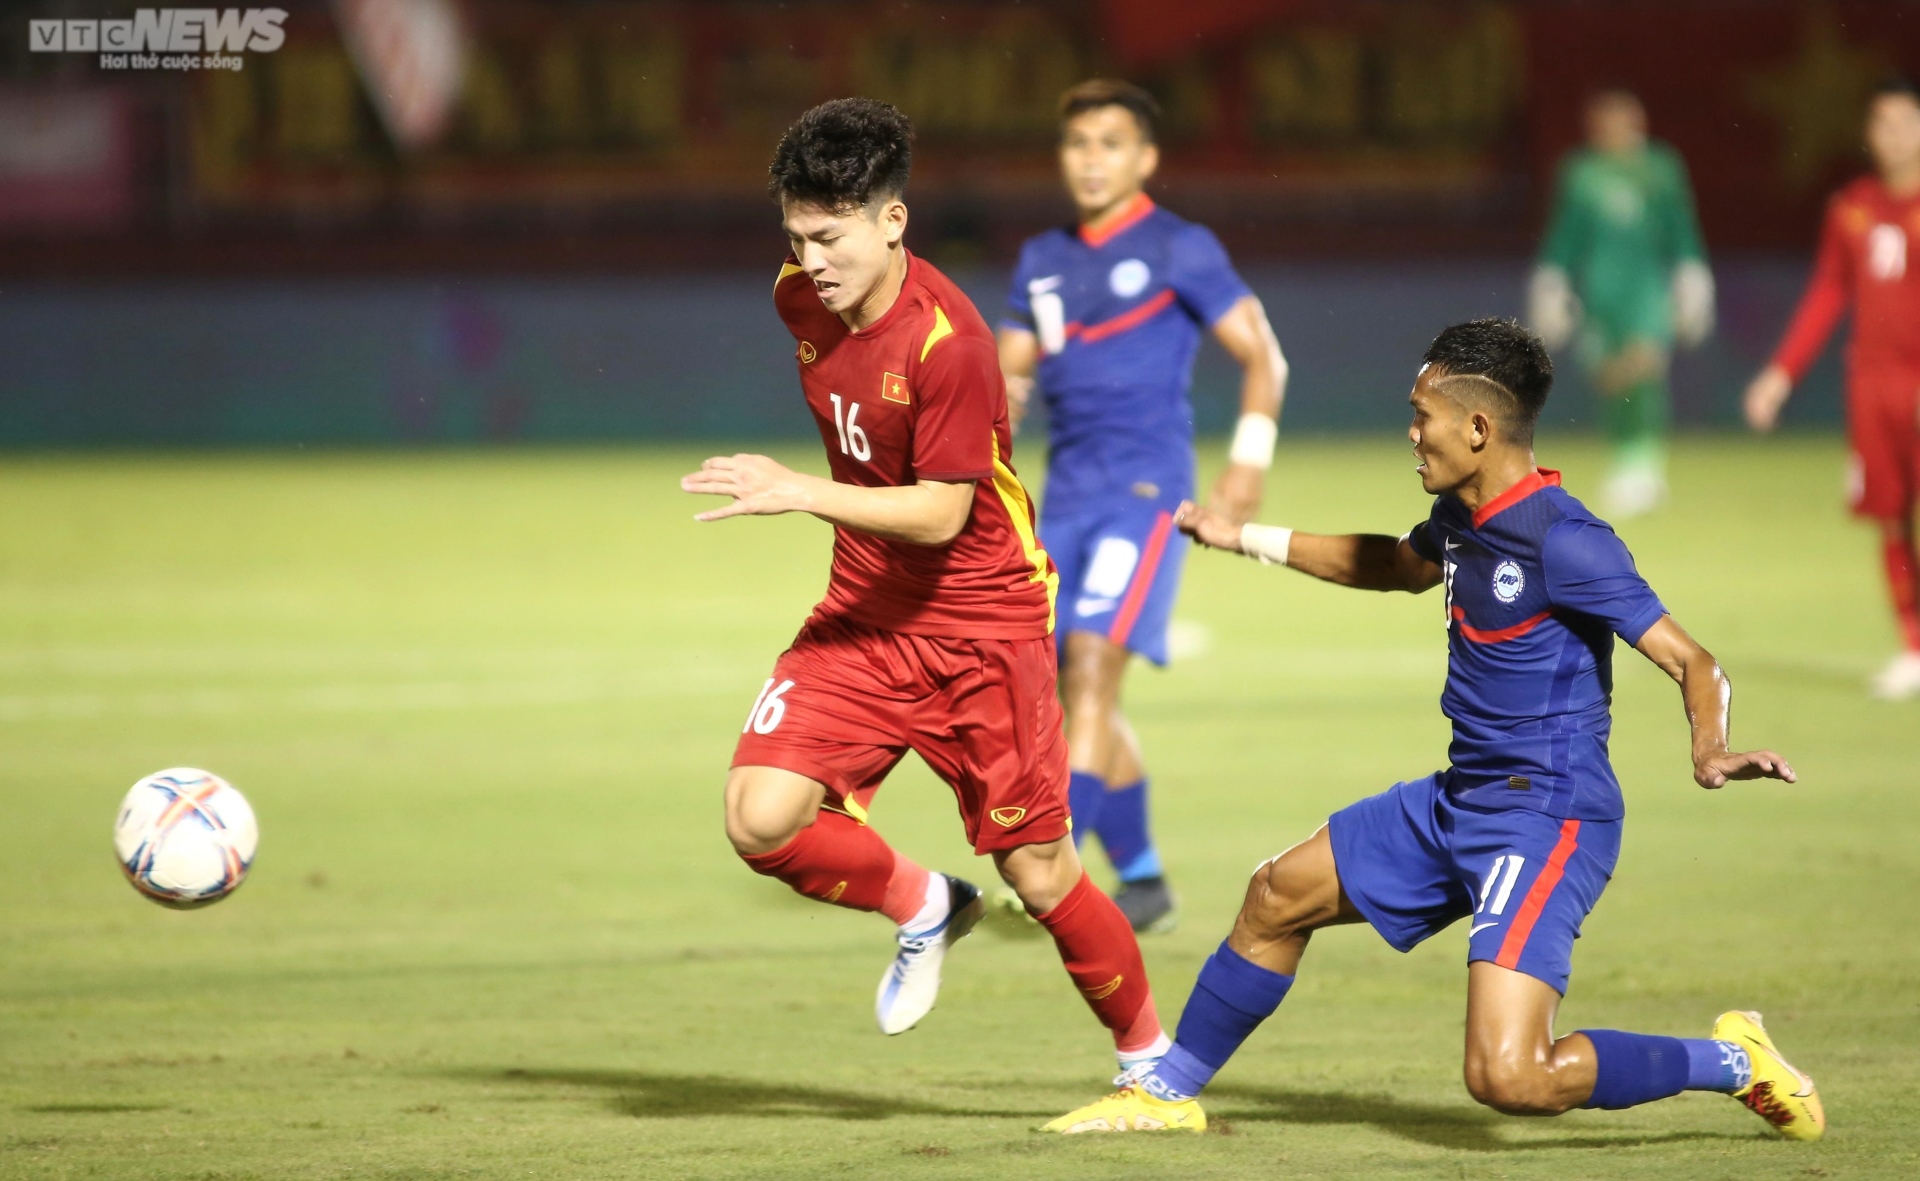 Tân binh U23 đua nhau tỏa sáng trong lần đầu khoác áo tuyển Việt Nam - Ảnh 2.